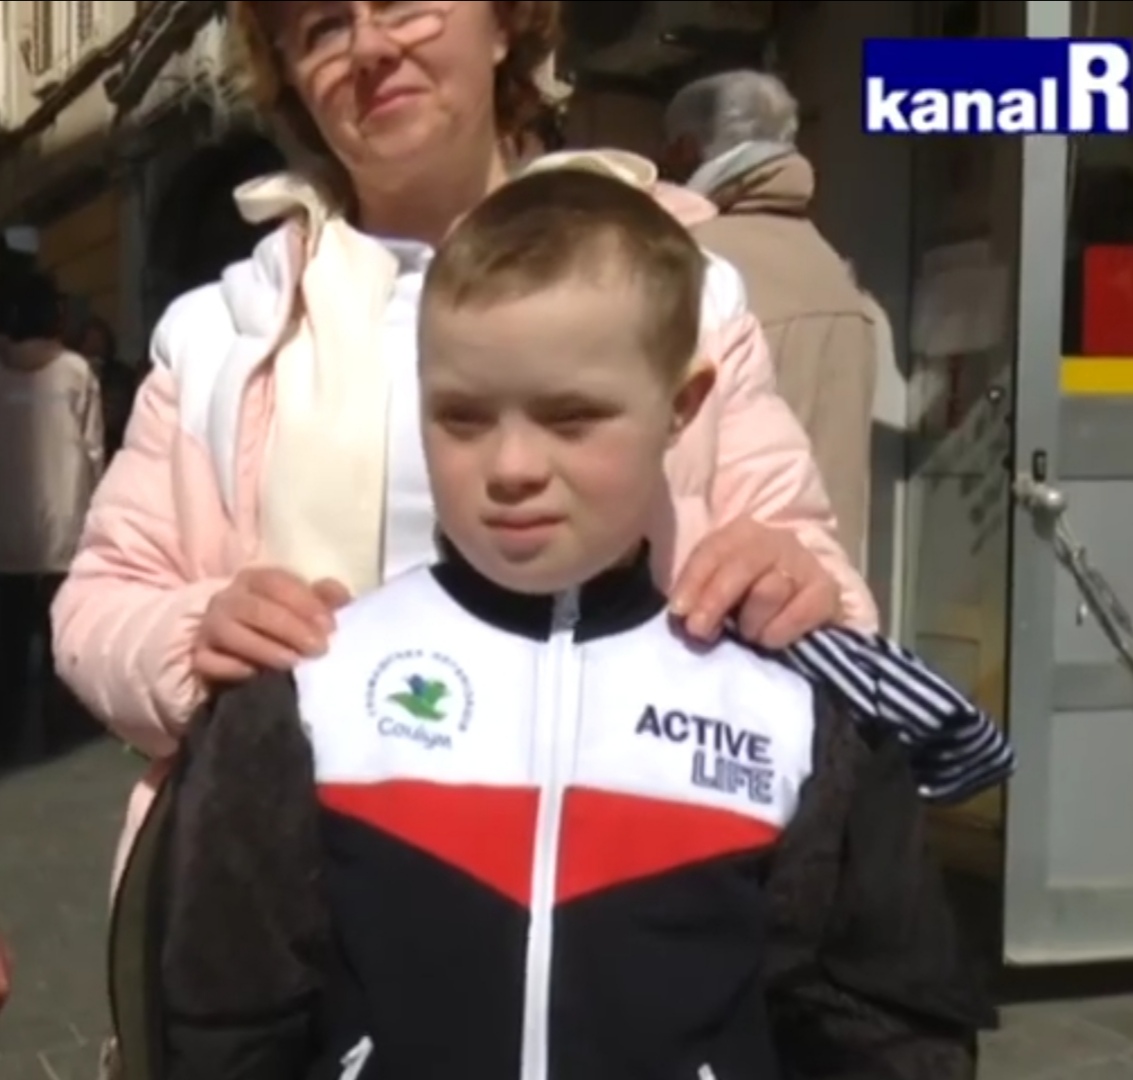 Udruga Rijeka 21 pomaže ukrajinskom dječaku s down sindromom i njegovoj obitelji